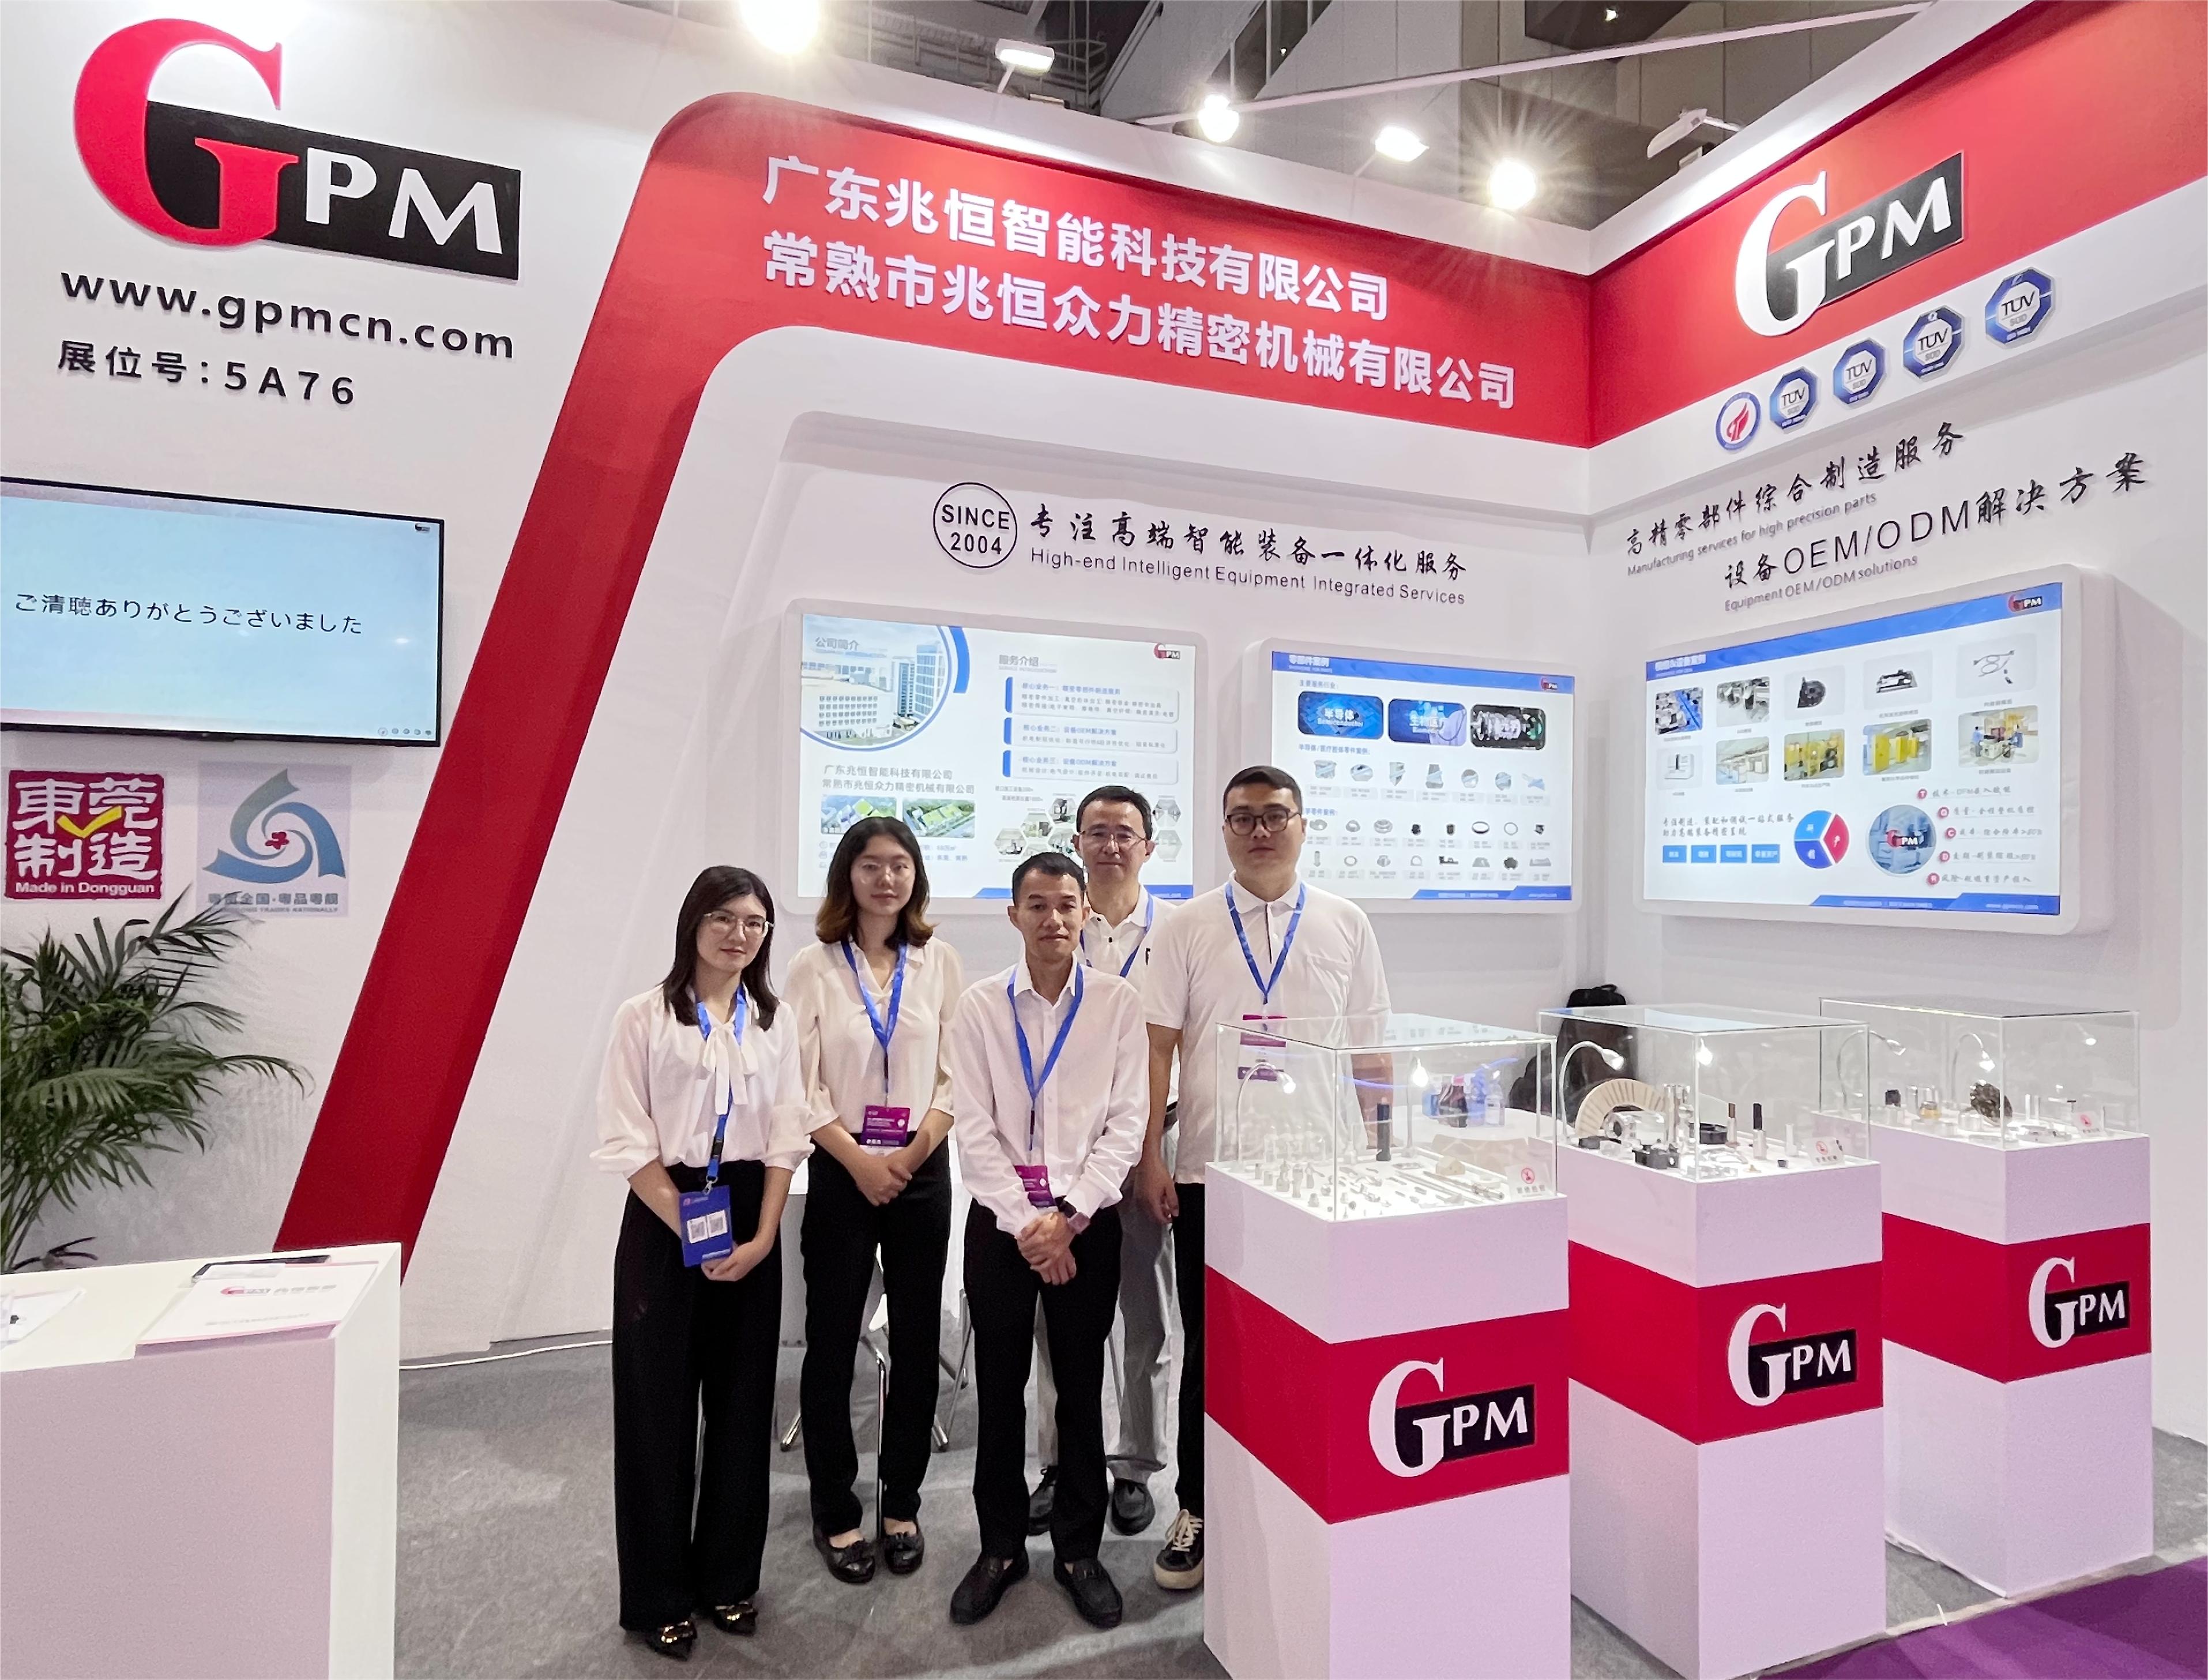 Spoločnosť GPM predstavuje poprednú technológiu na čínskej medzinárodnej optoelektronickej výstave